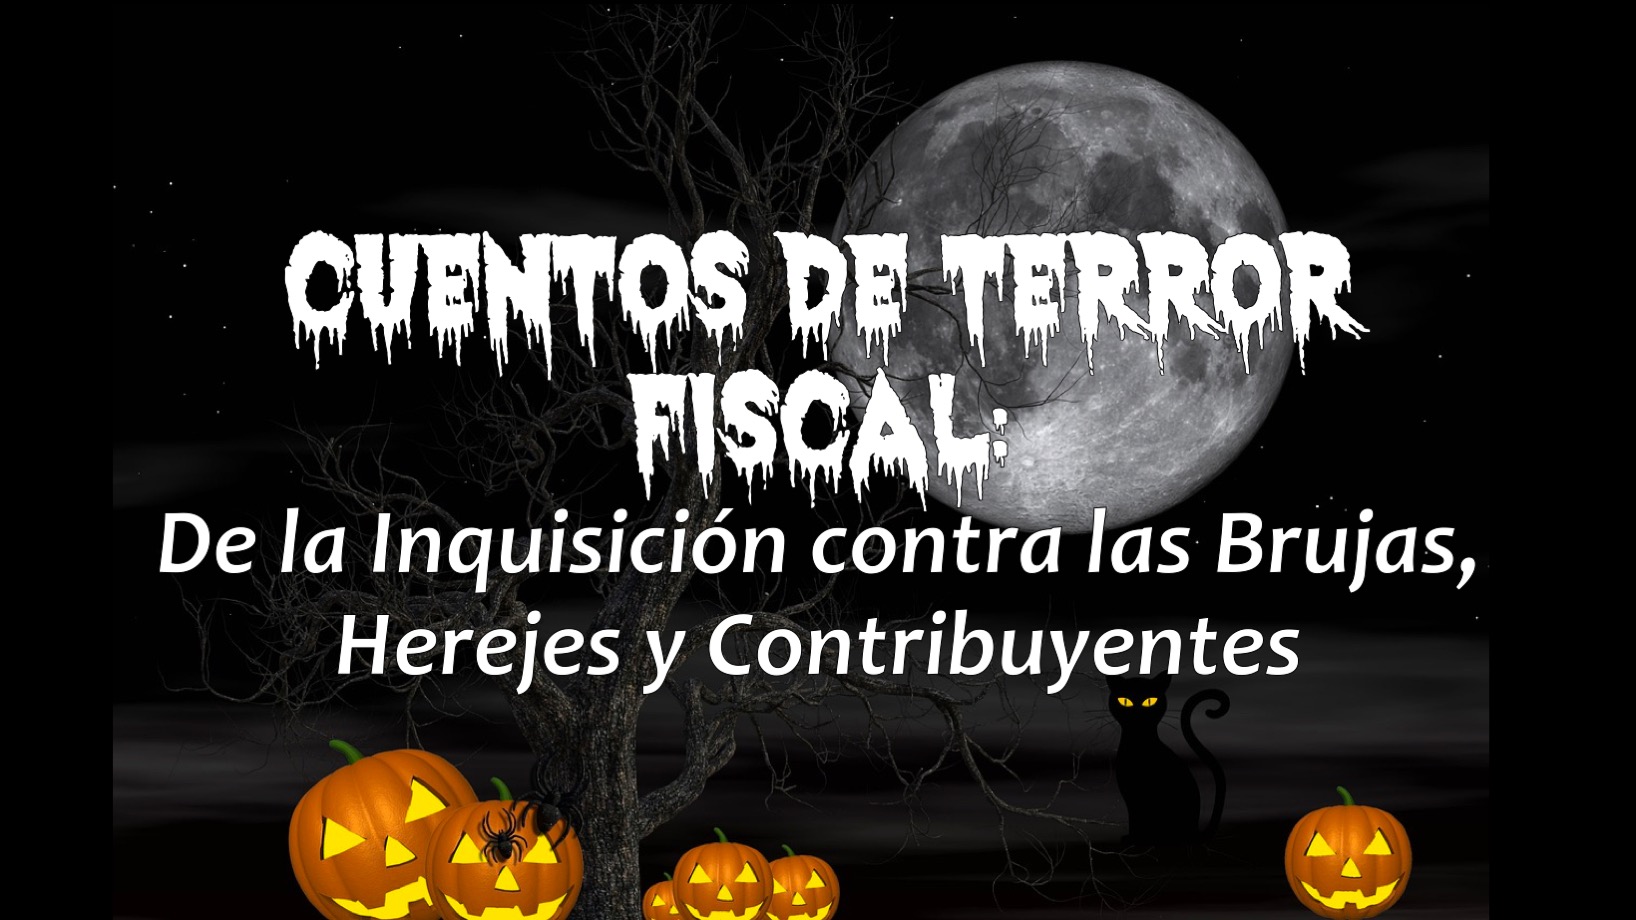 CUENTOS DE TERROR FISCAL: De la inquisición contra las brujas, herejes y contribuyentes